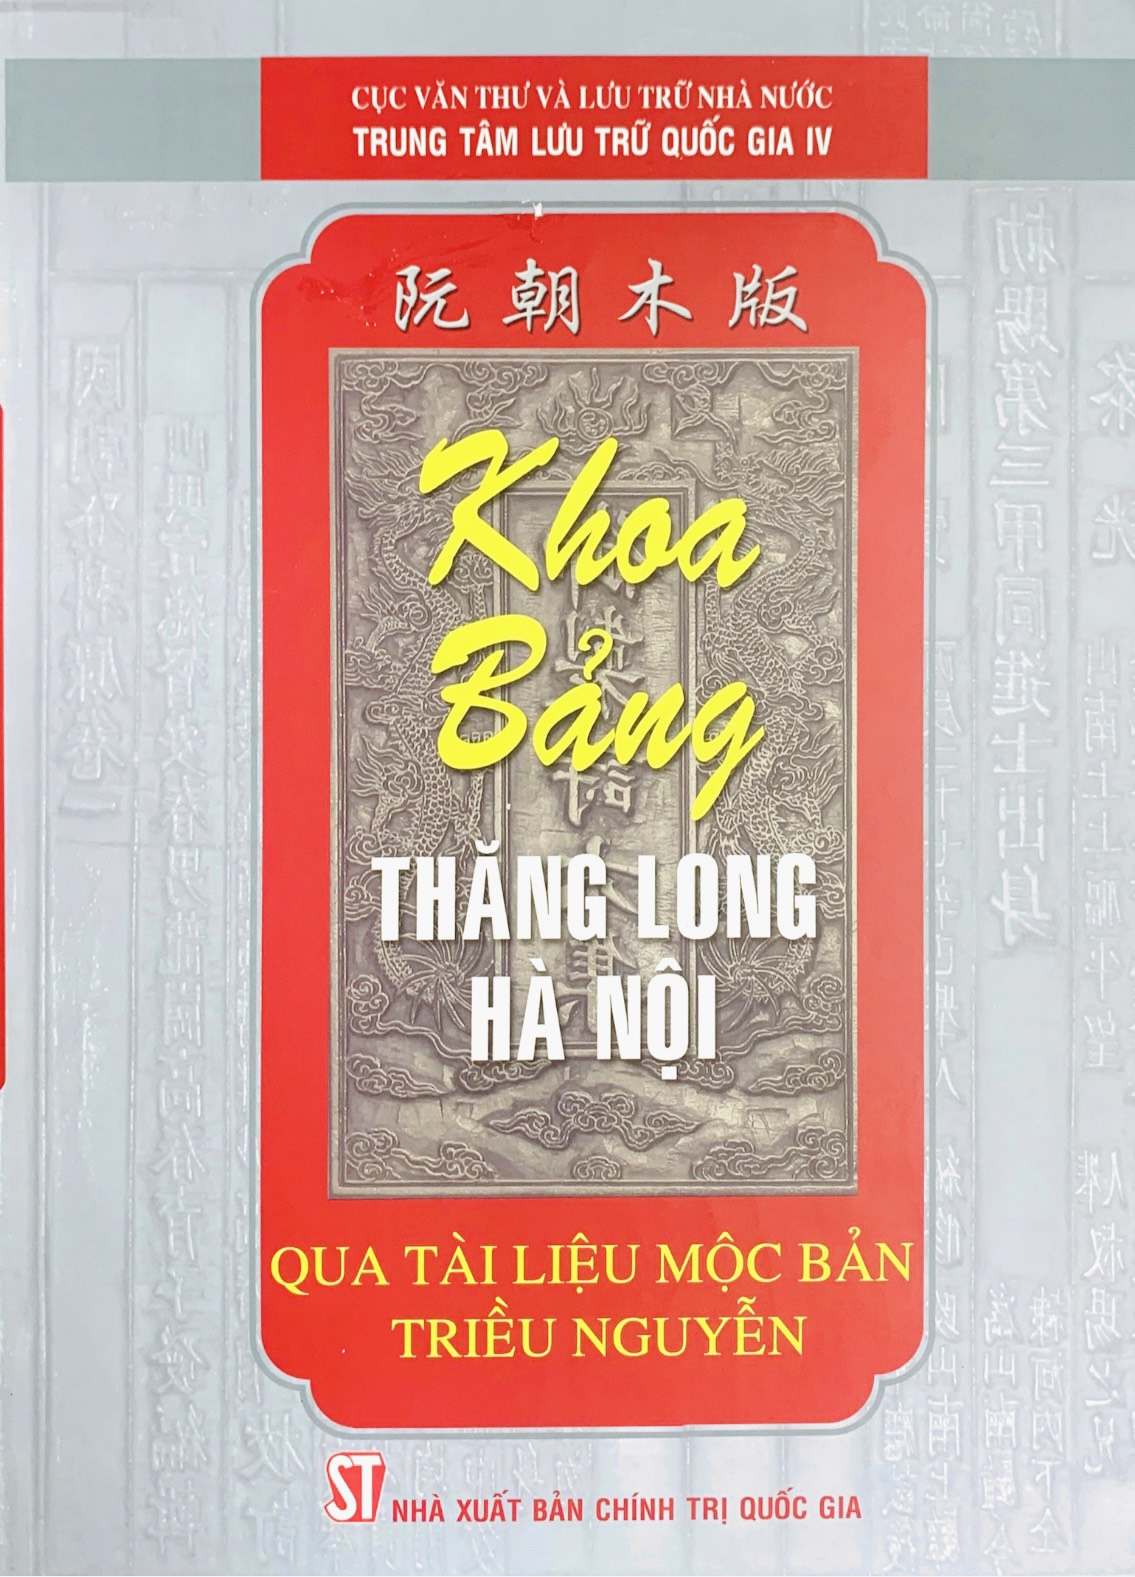 Khoa bảng Thăng Long – Hà Nội qua tài liệu mộc bản triều Nguyễn (xuất bản 2010)